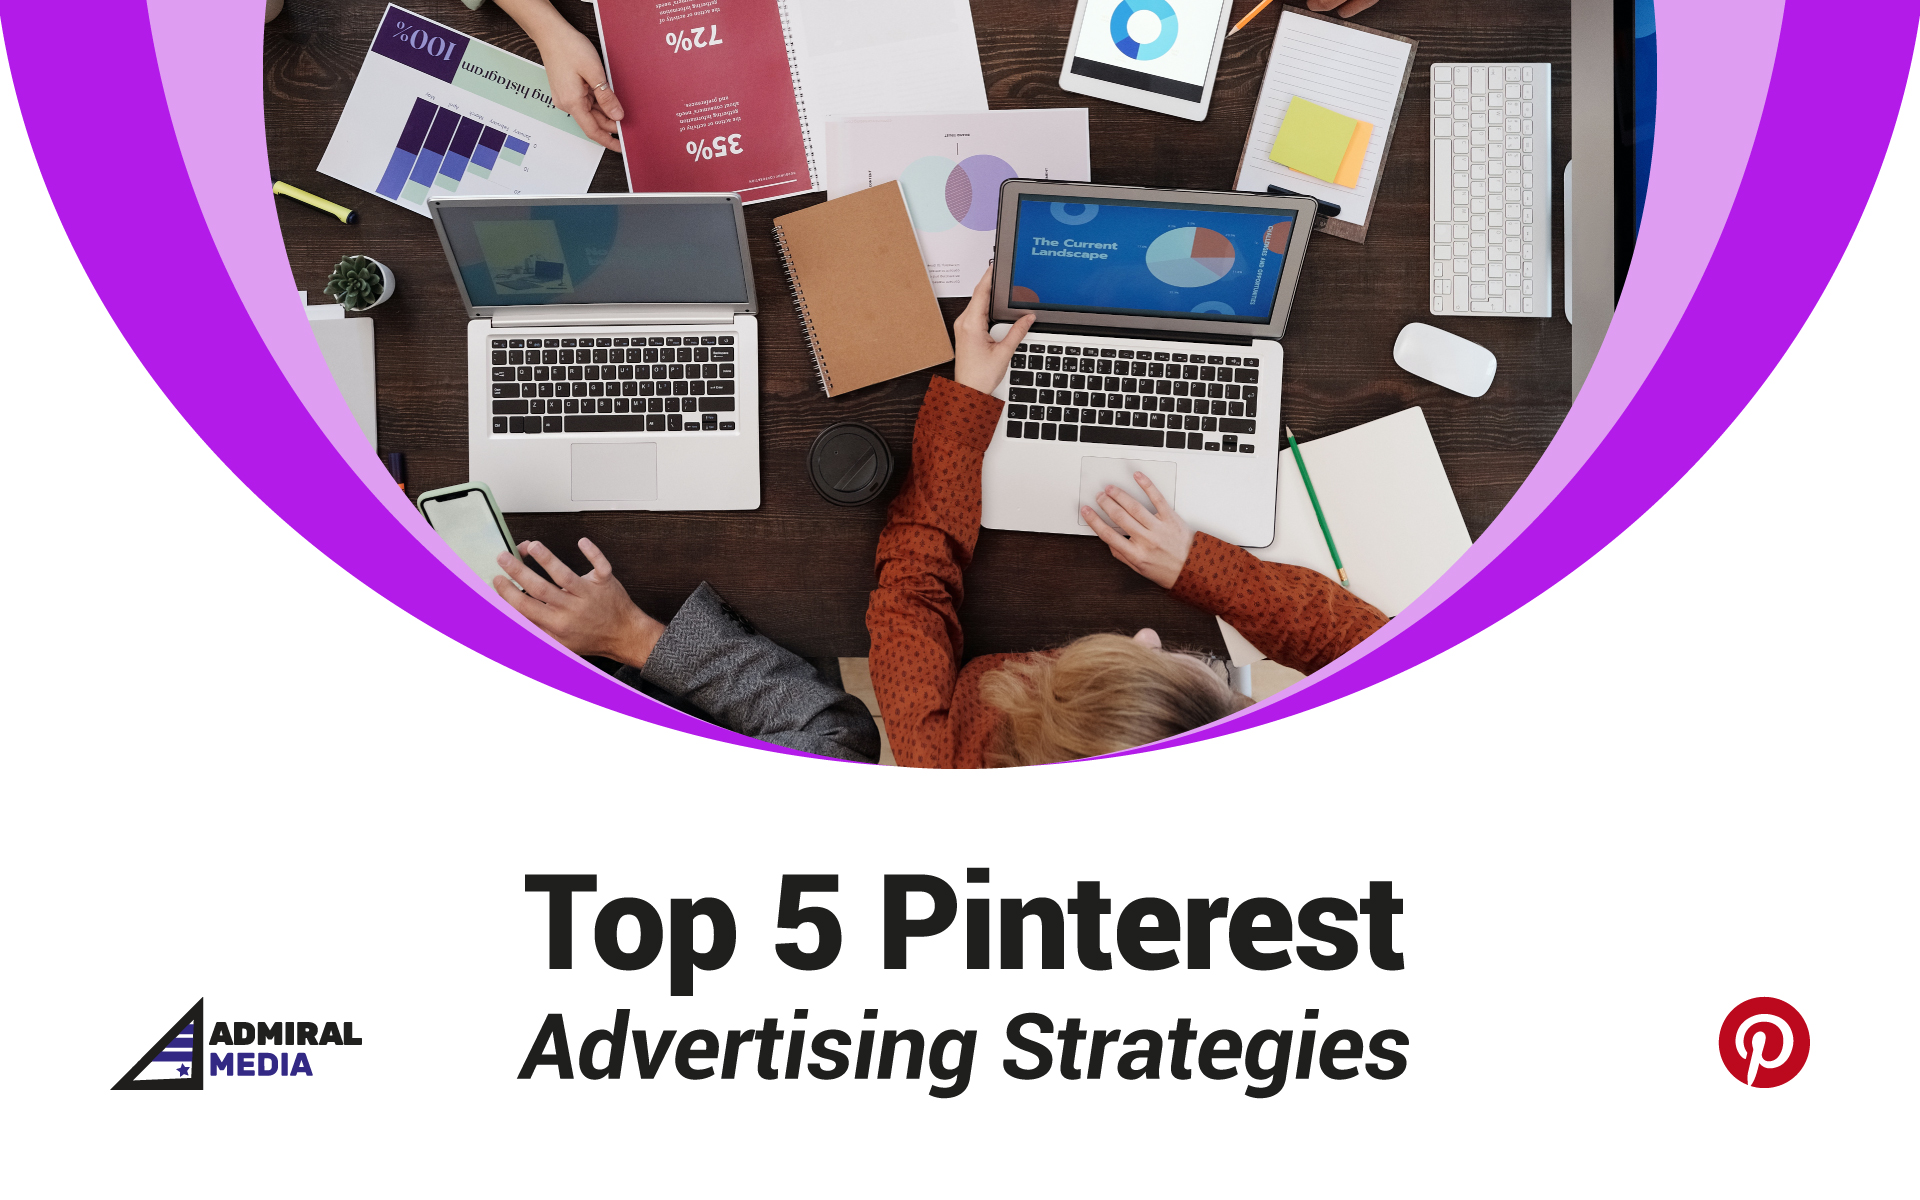 Top 5 Pinterest Advertising Strategies